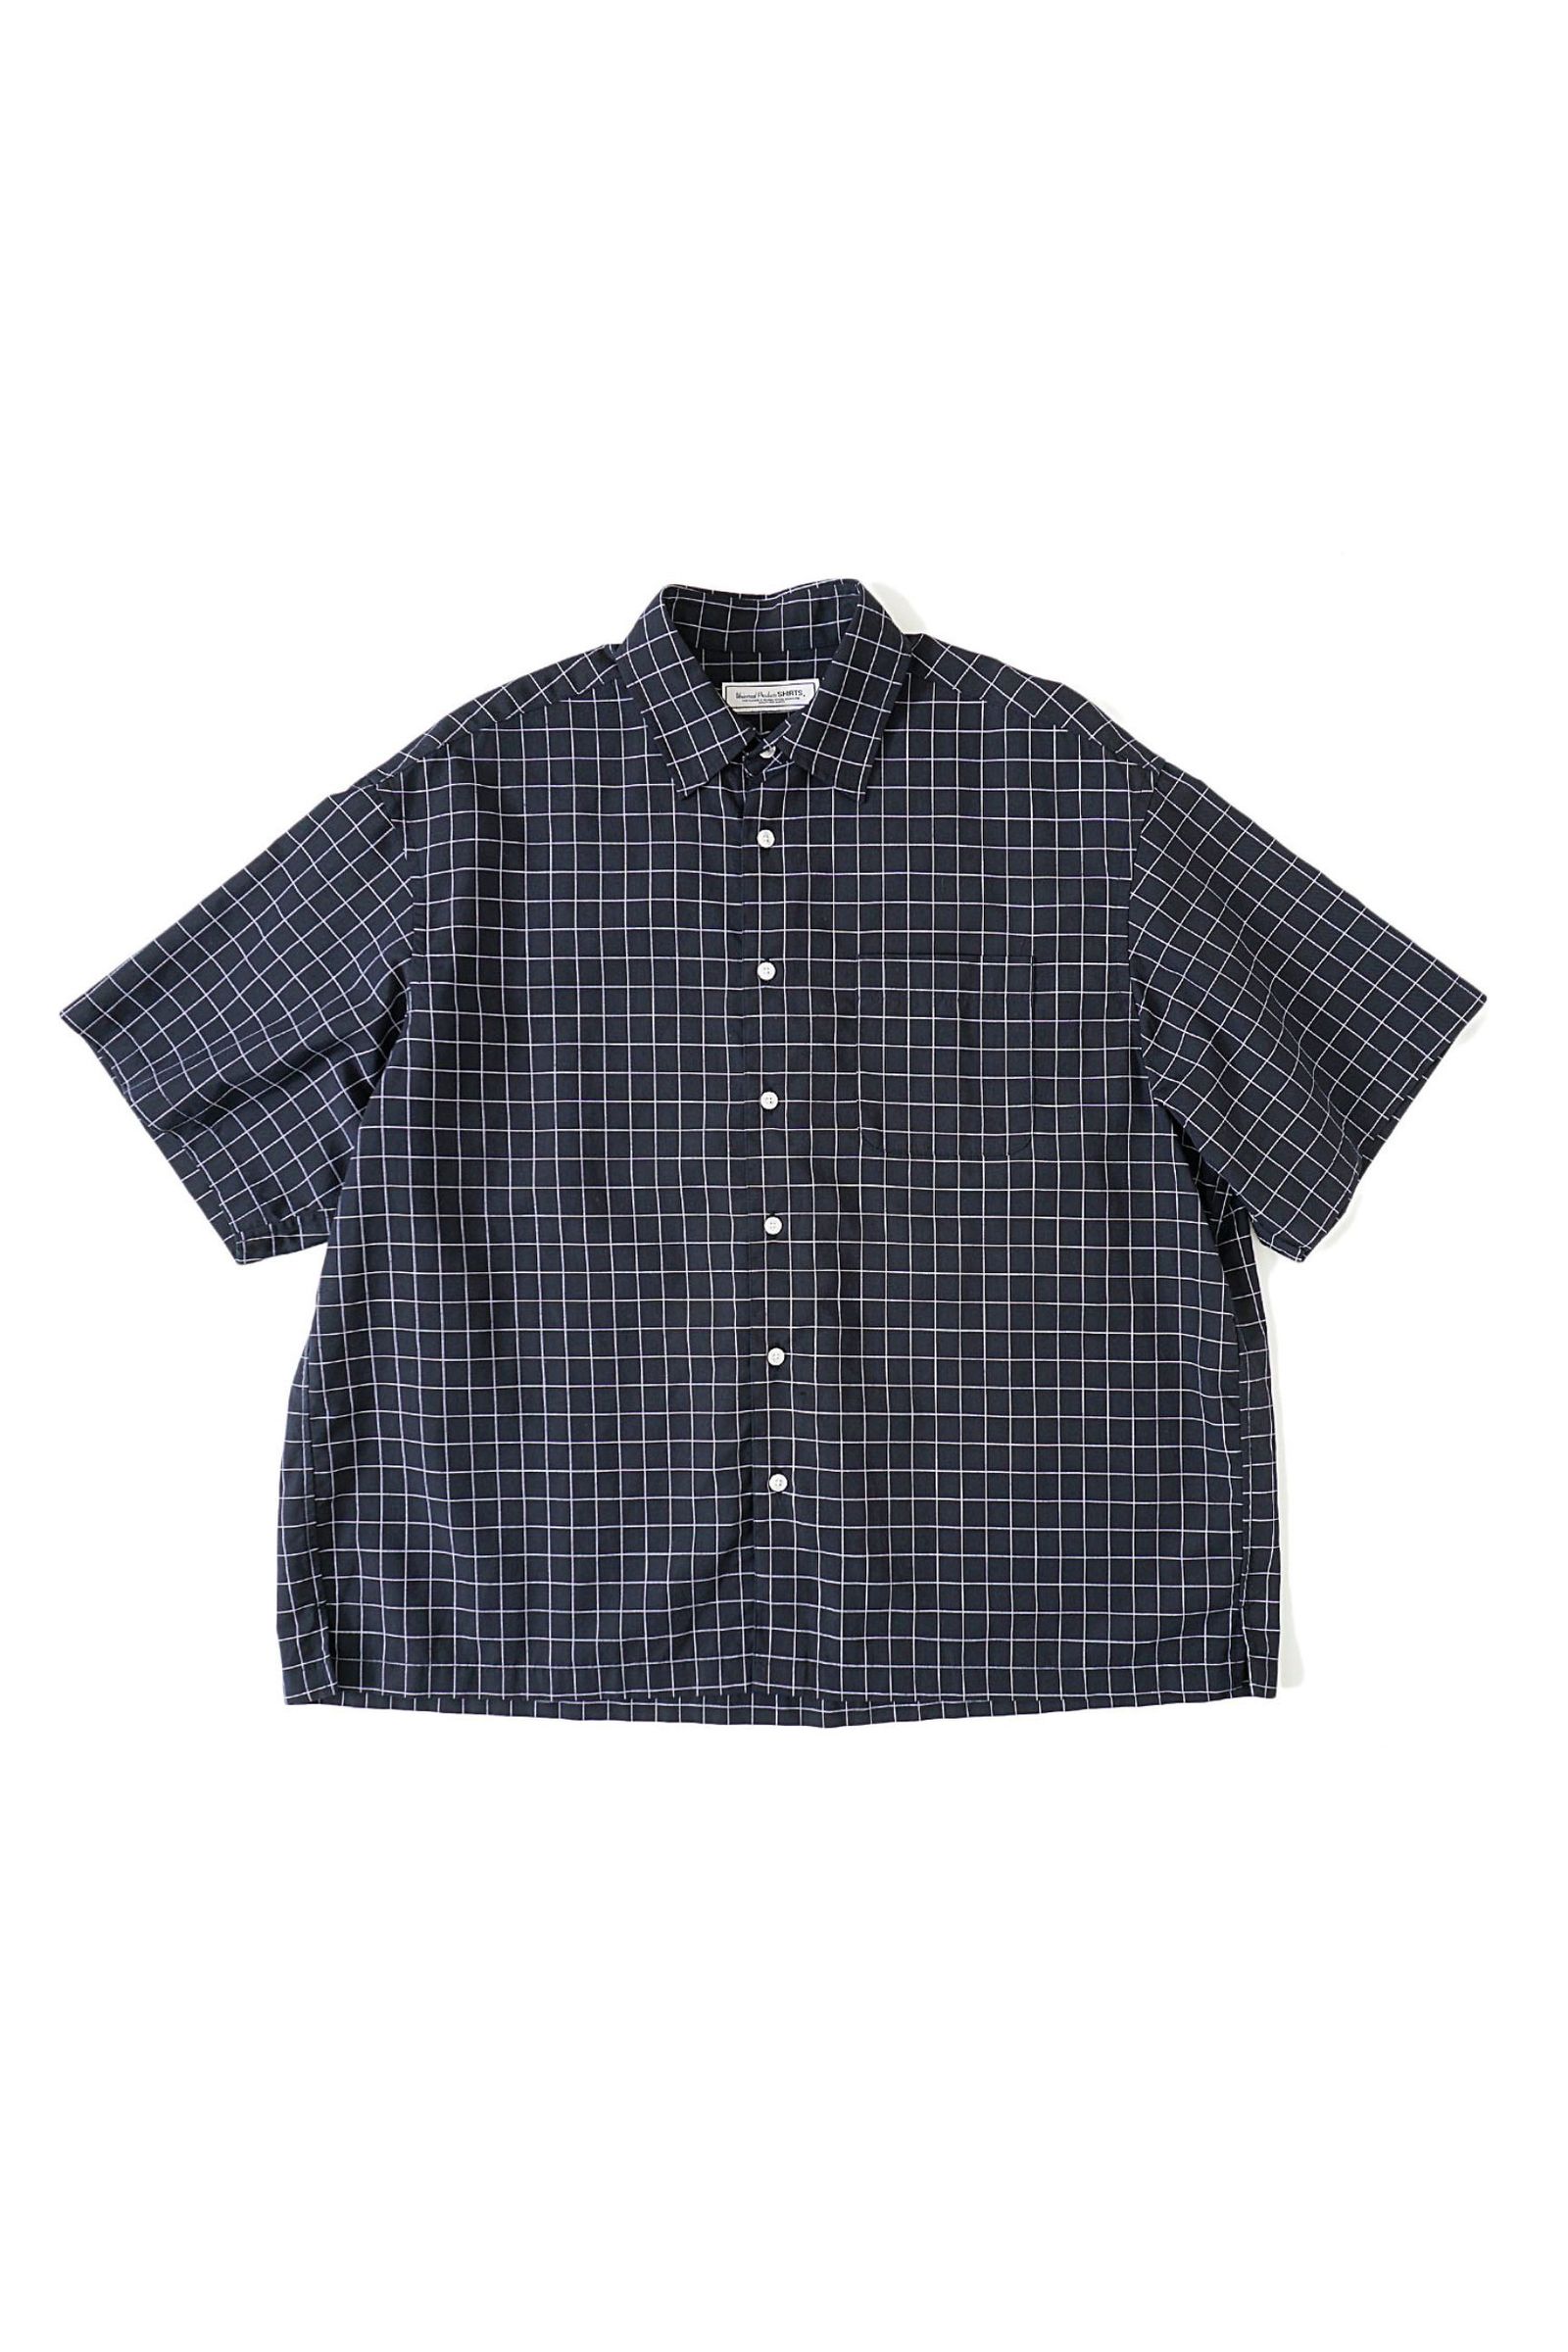 高級感Linen Windowpane Check S/S Shirt 半袖シャツ トップス